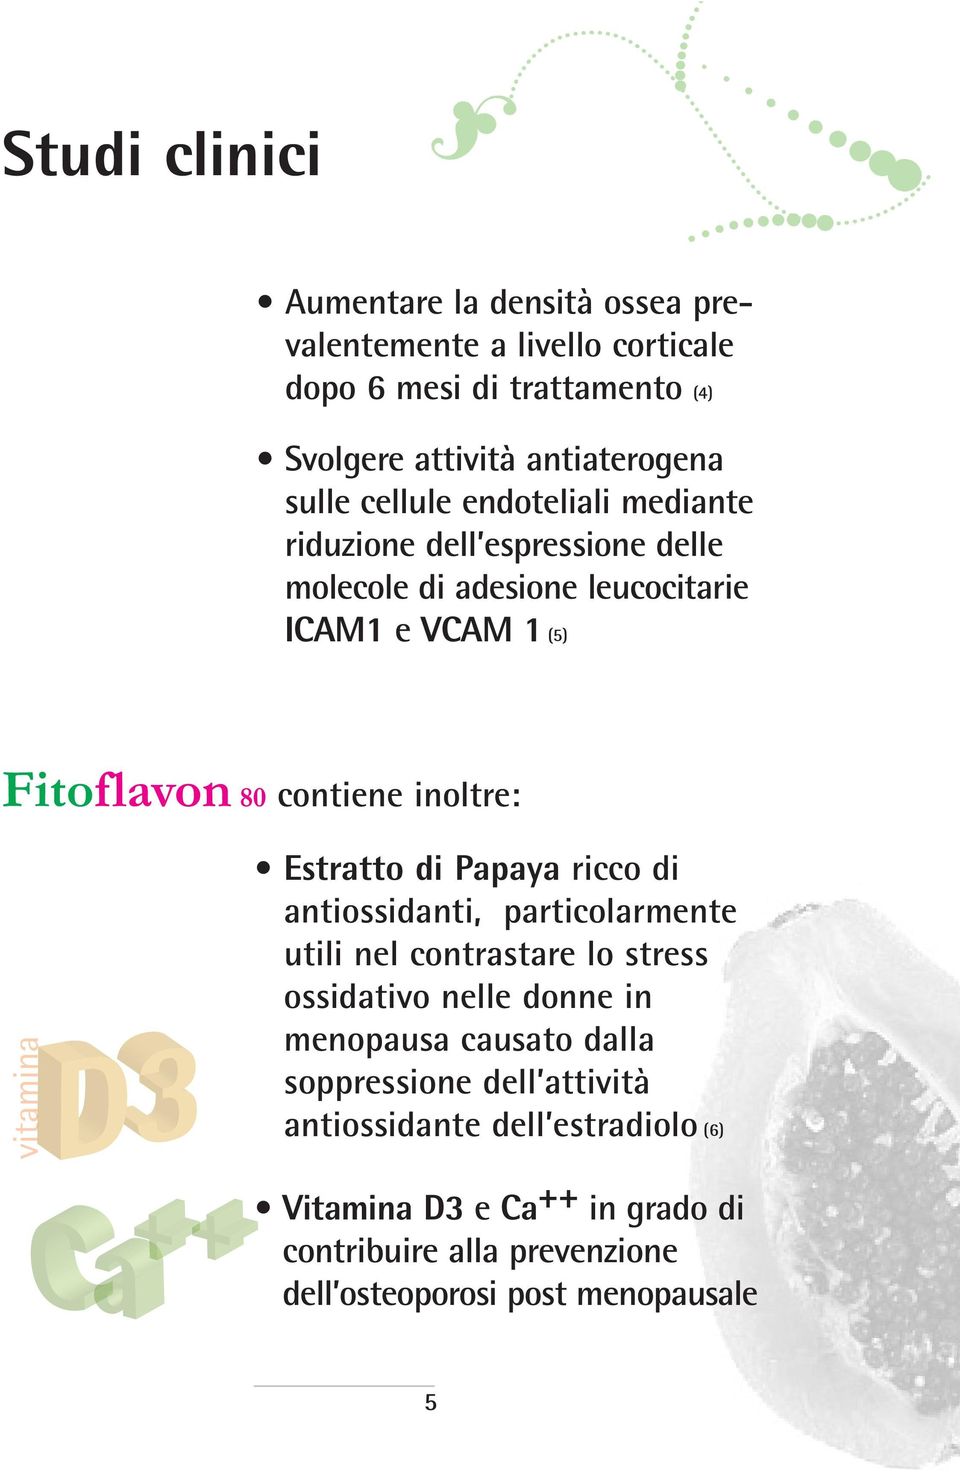 Estratto di Papaya ricco di antiossidanti, particolarmente utili nel contrastare lo stress ossidativo nelle donne in menopausa causato dalla